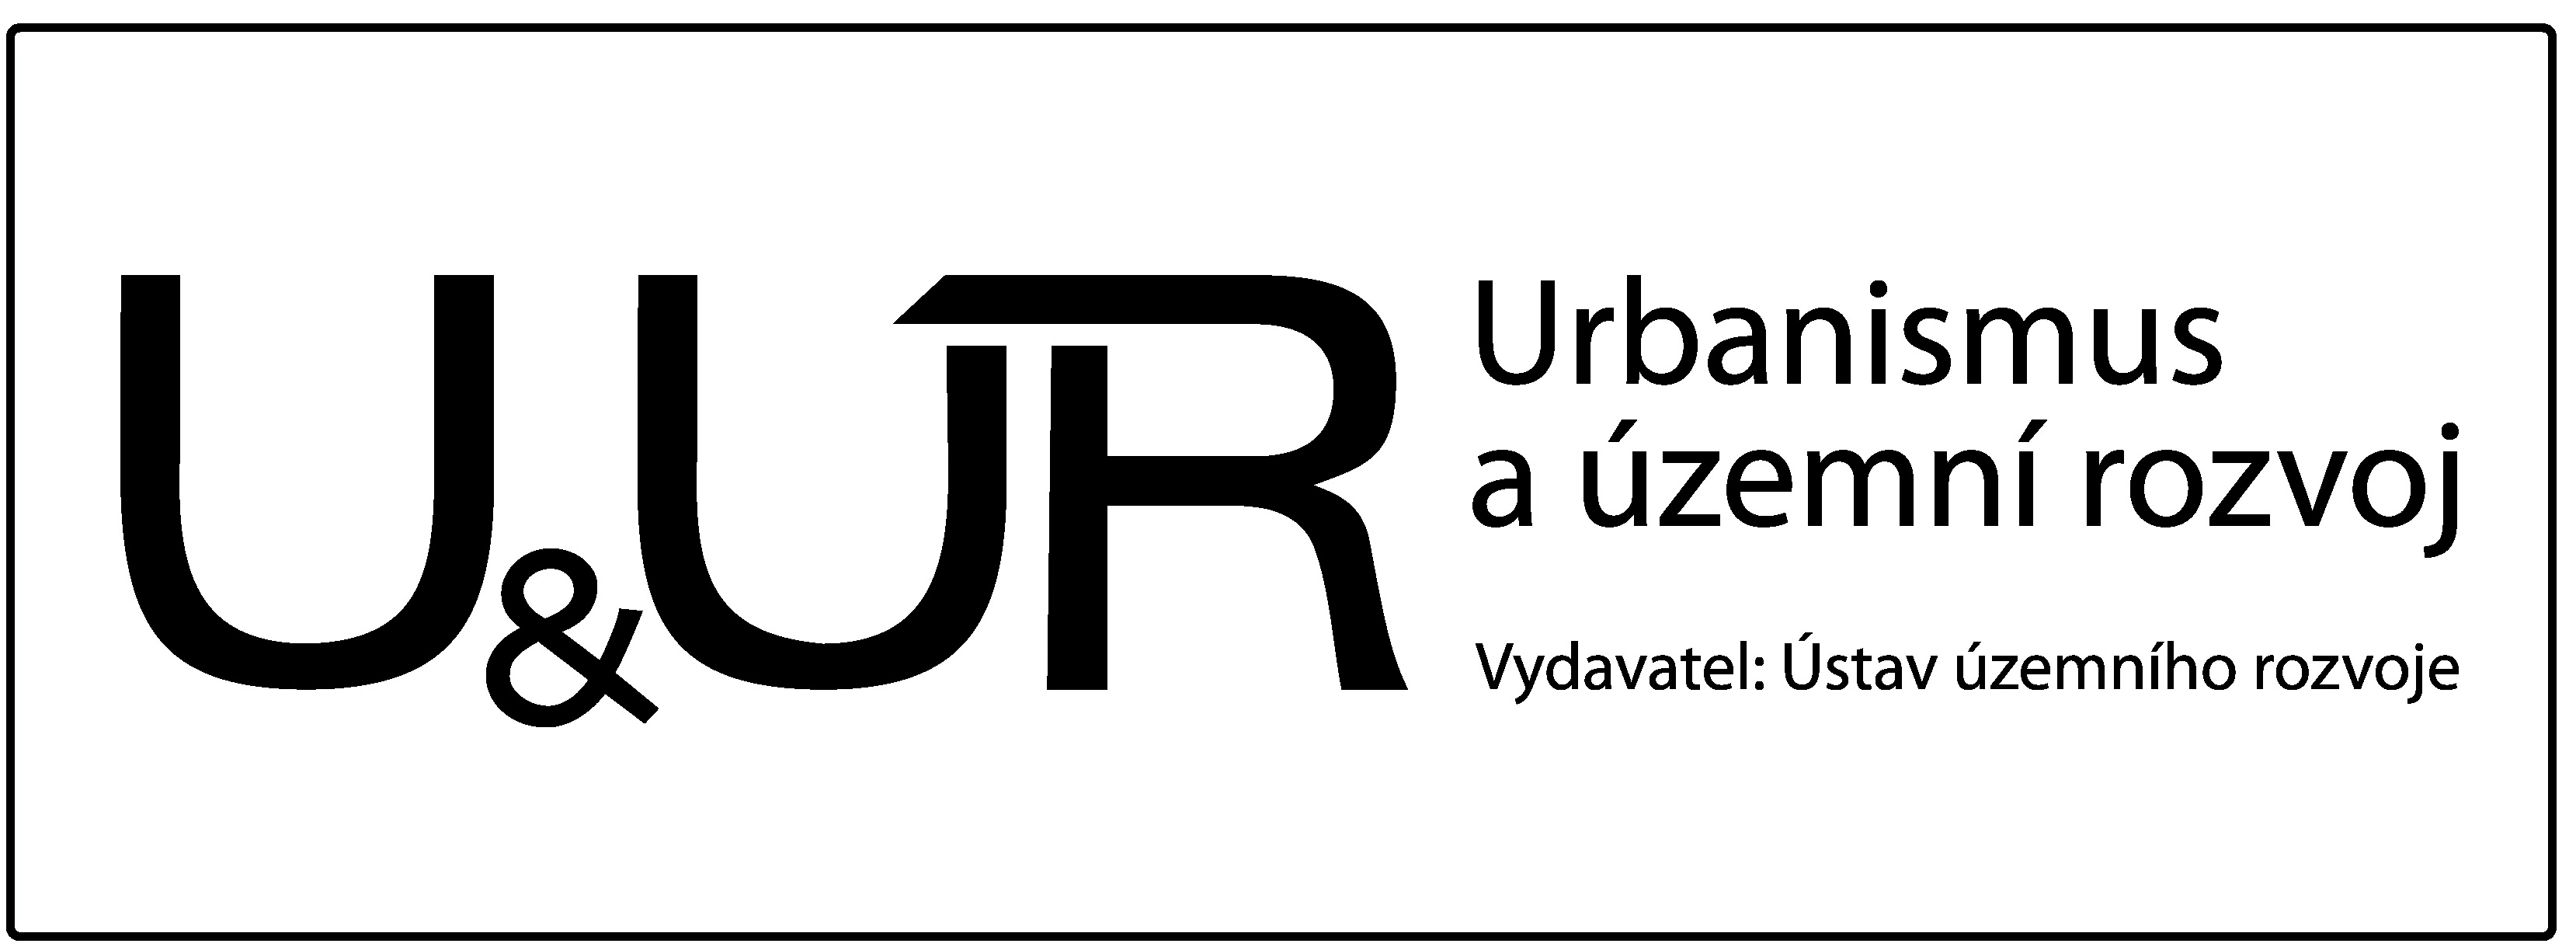 Časopis Urbanismus a územní rozvoj - logo